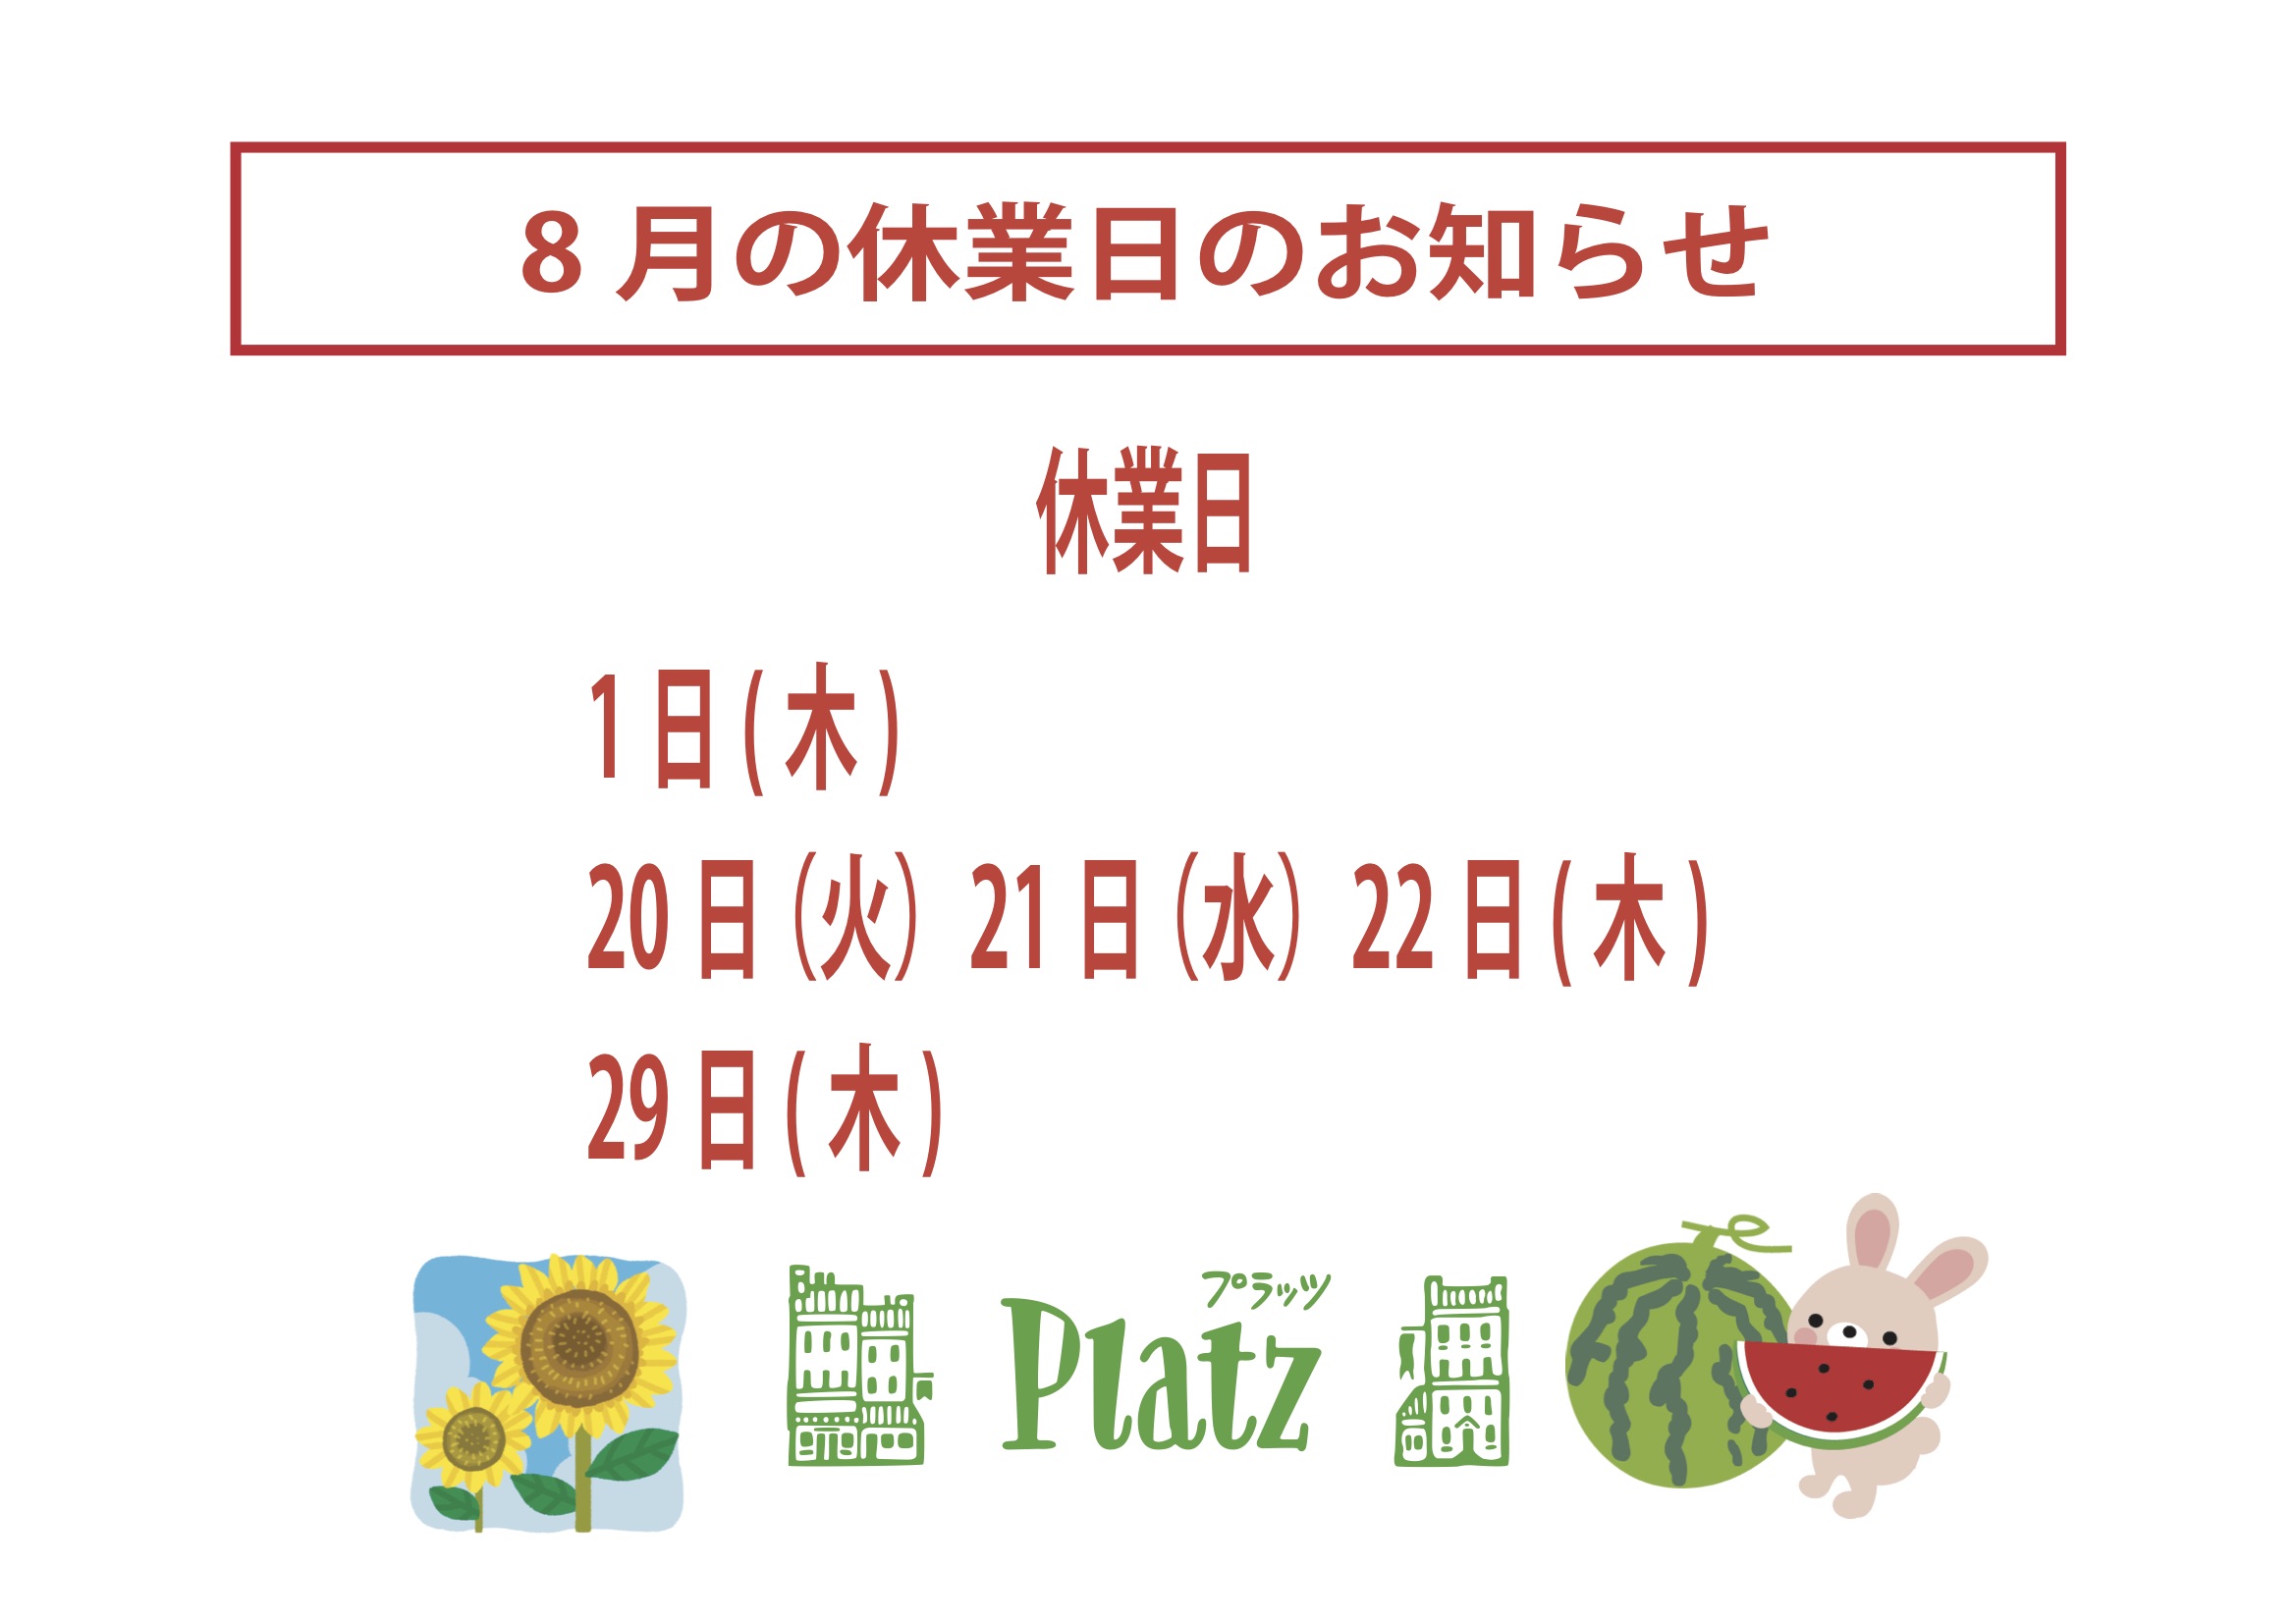 http://www.kyoto-platz.jp/news/images/2019.8%E6%9C%88%E4%BC%91%E6%A5%AD%E6%97%A5.jpg